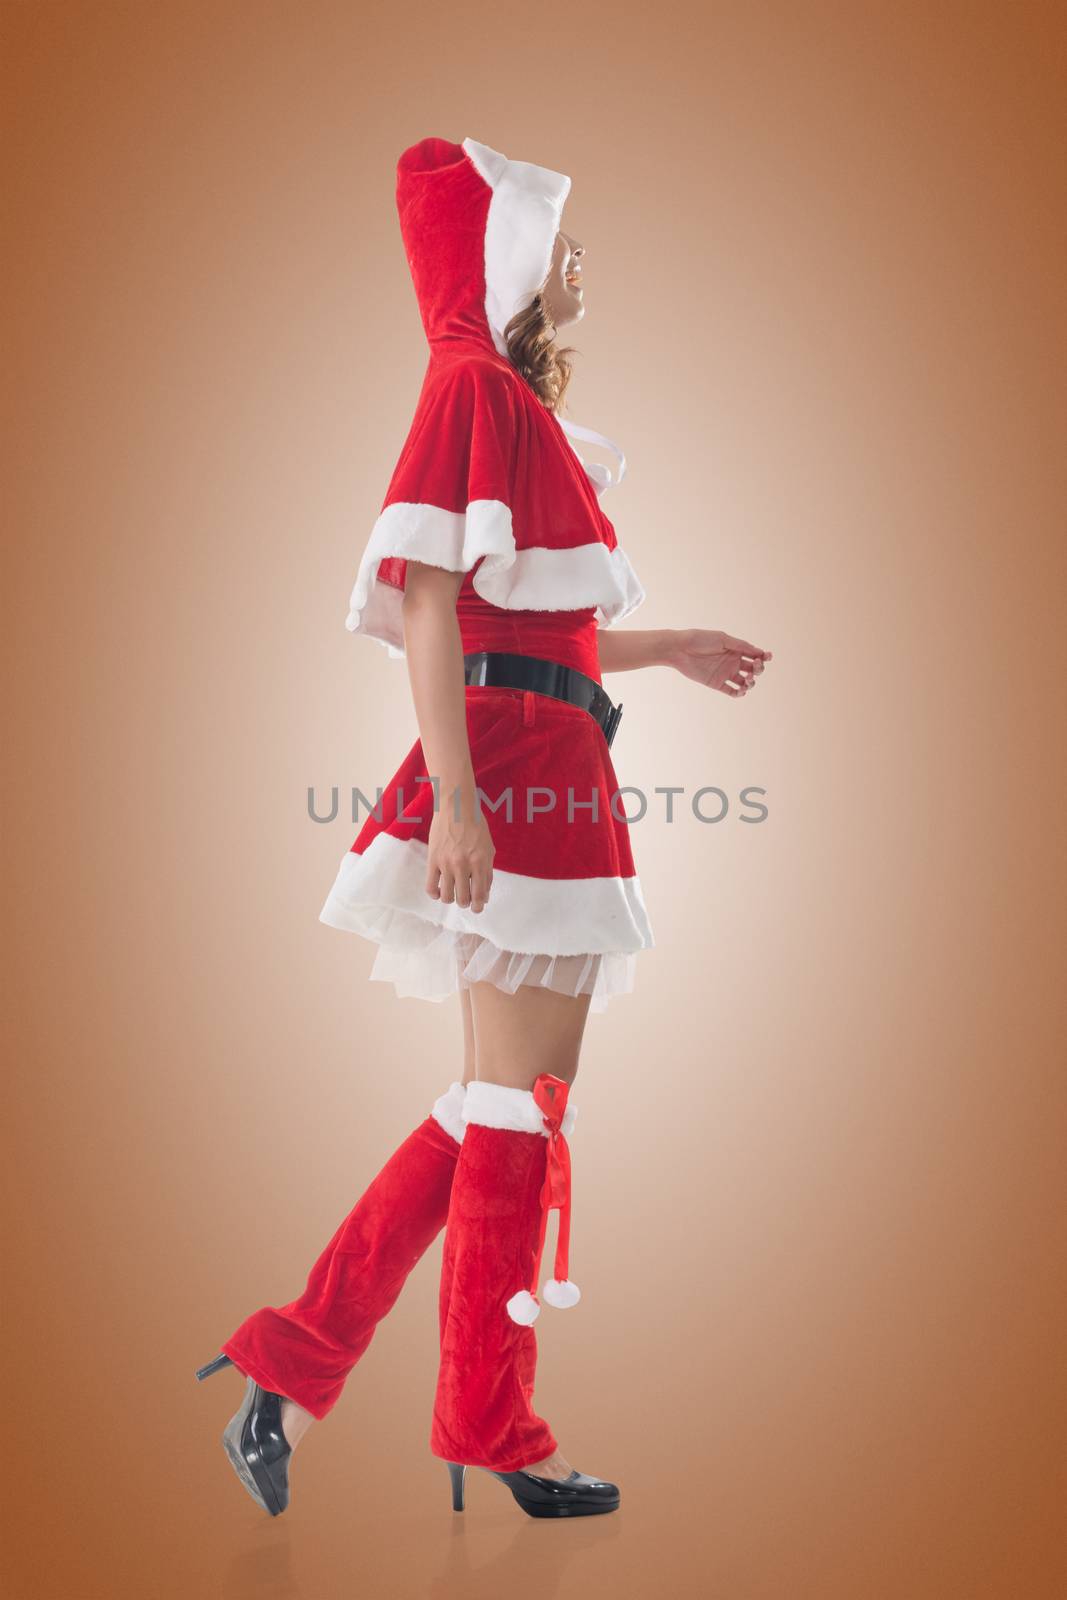 Asian Christmas girl walk, full length portrait. Side view.